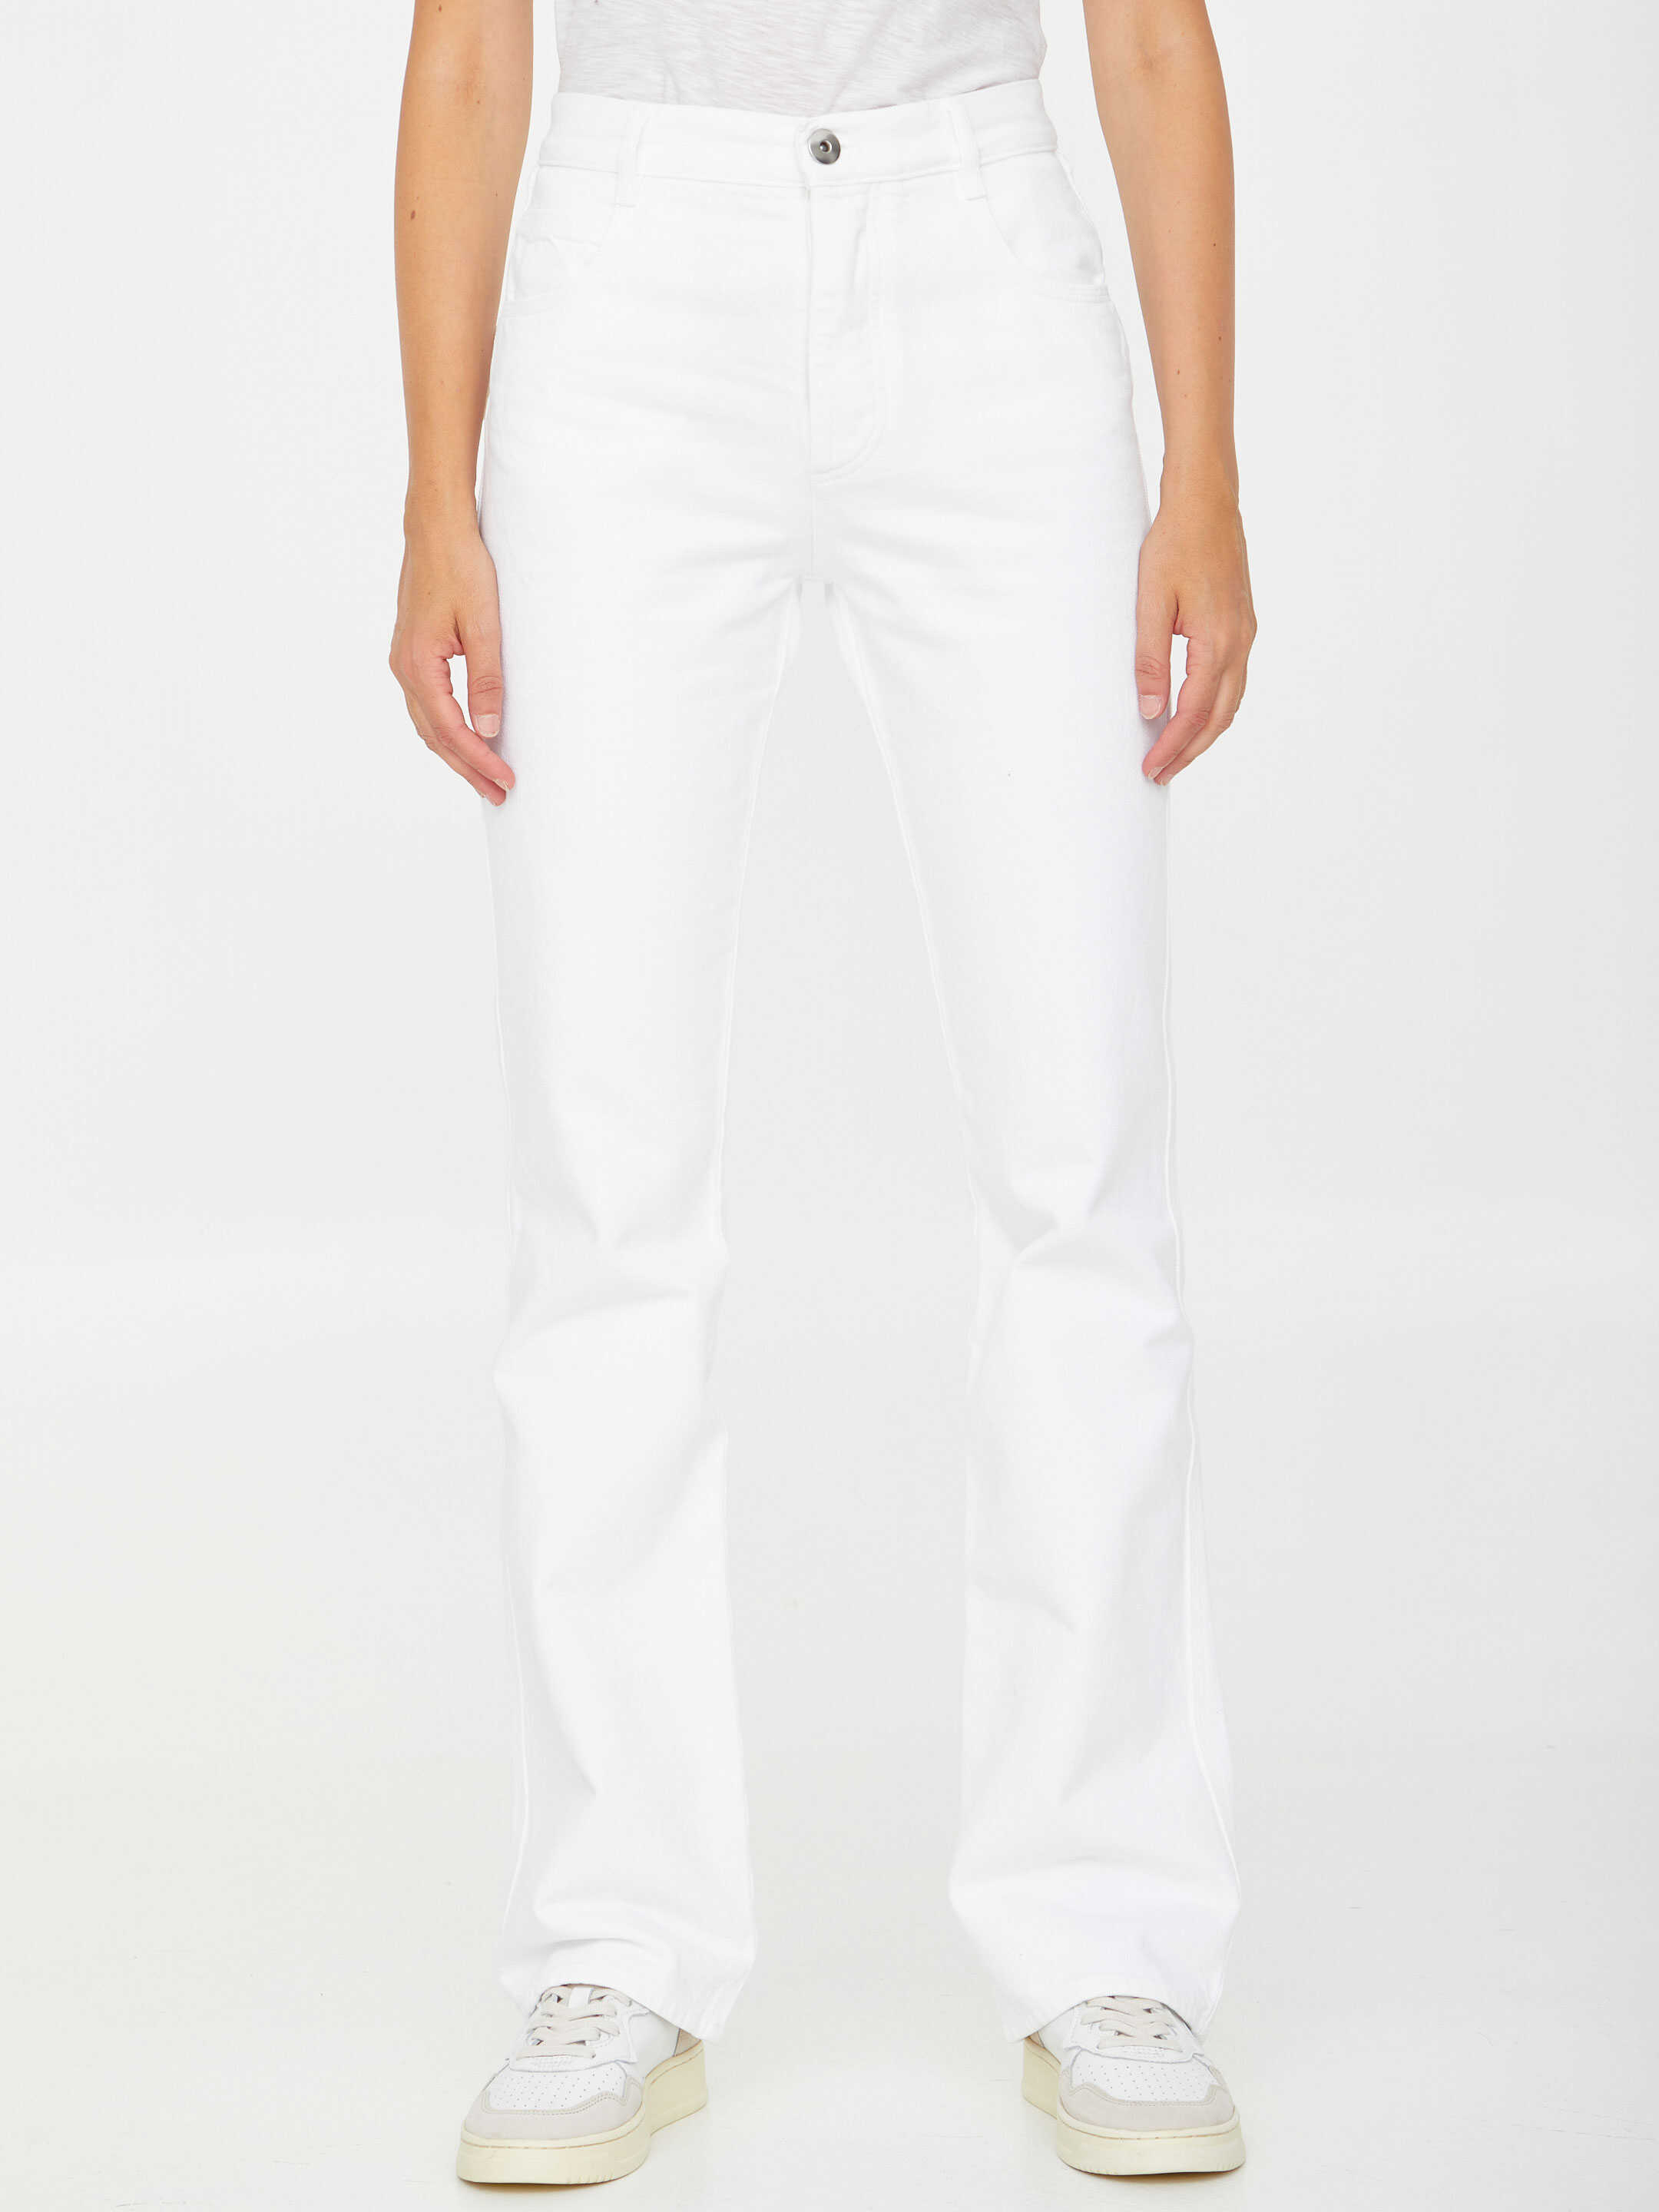 Bottega Veneta Denim Jeans White